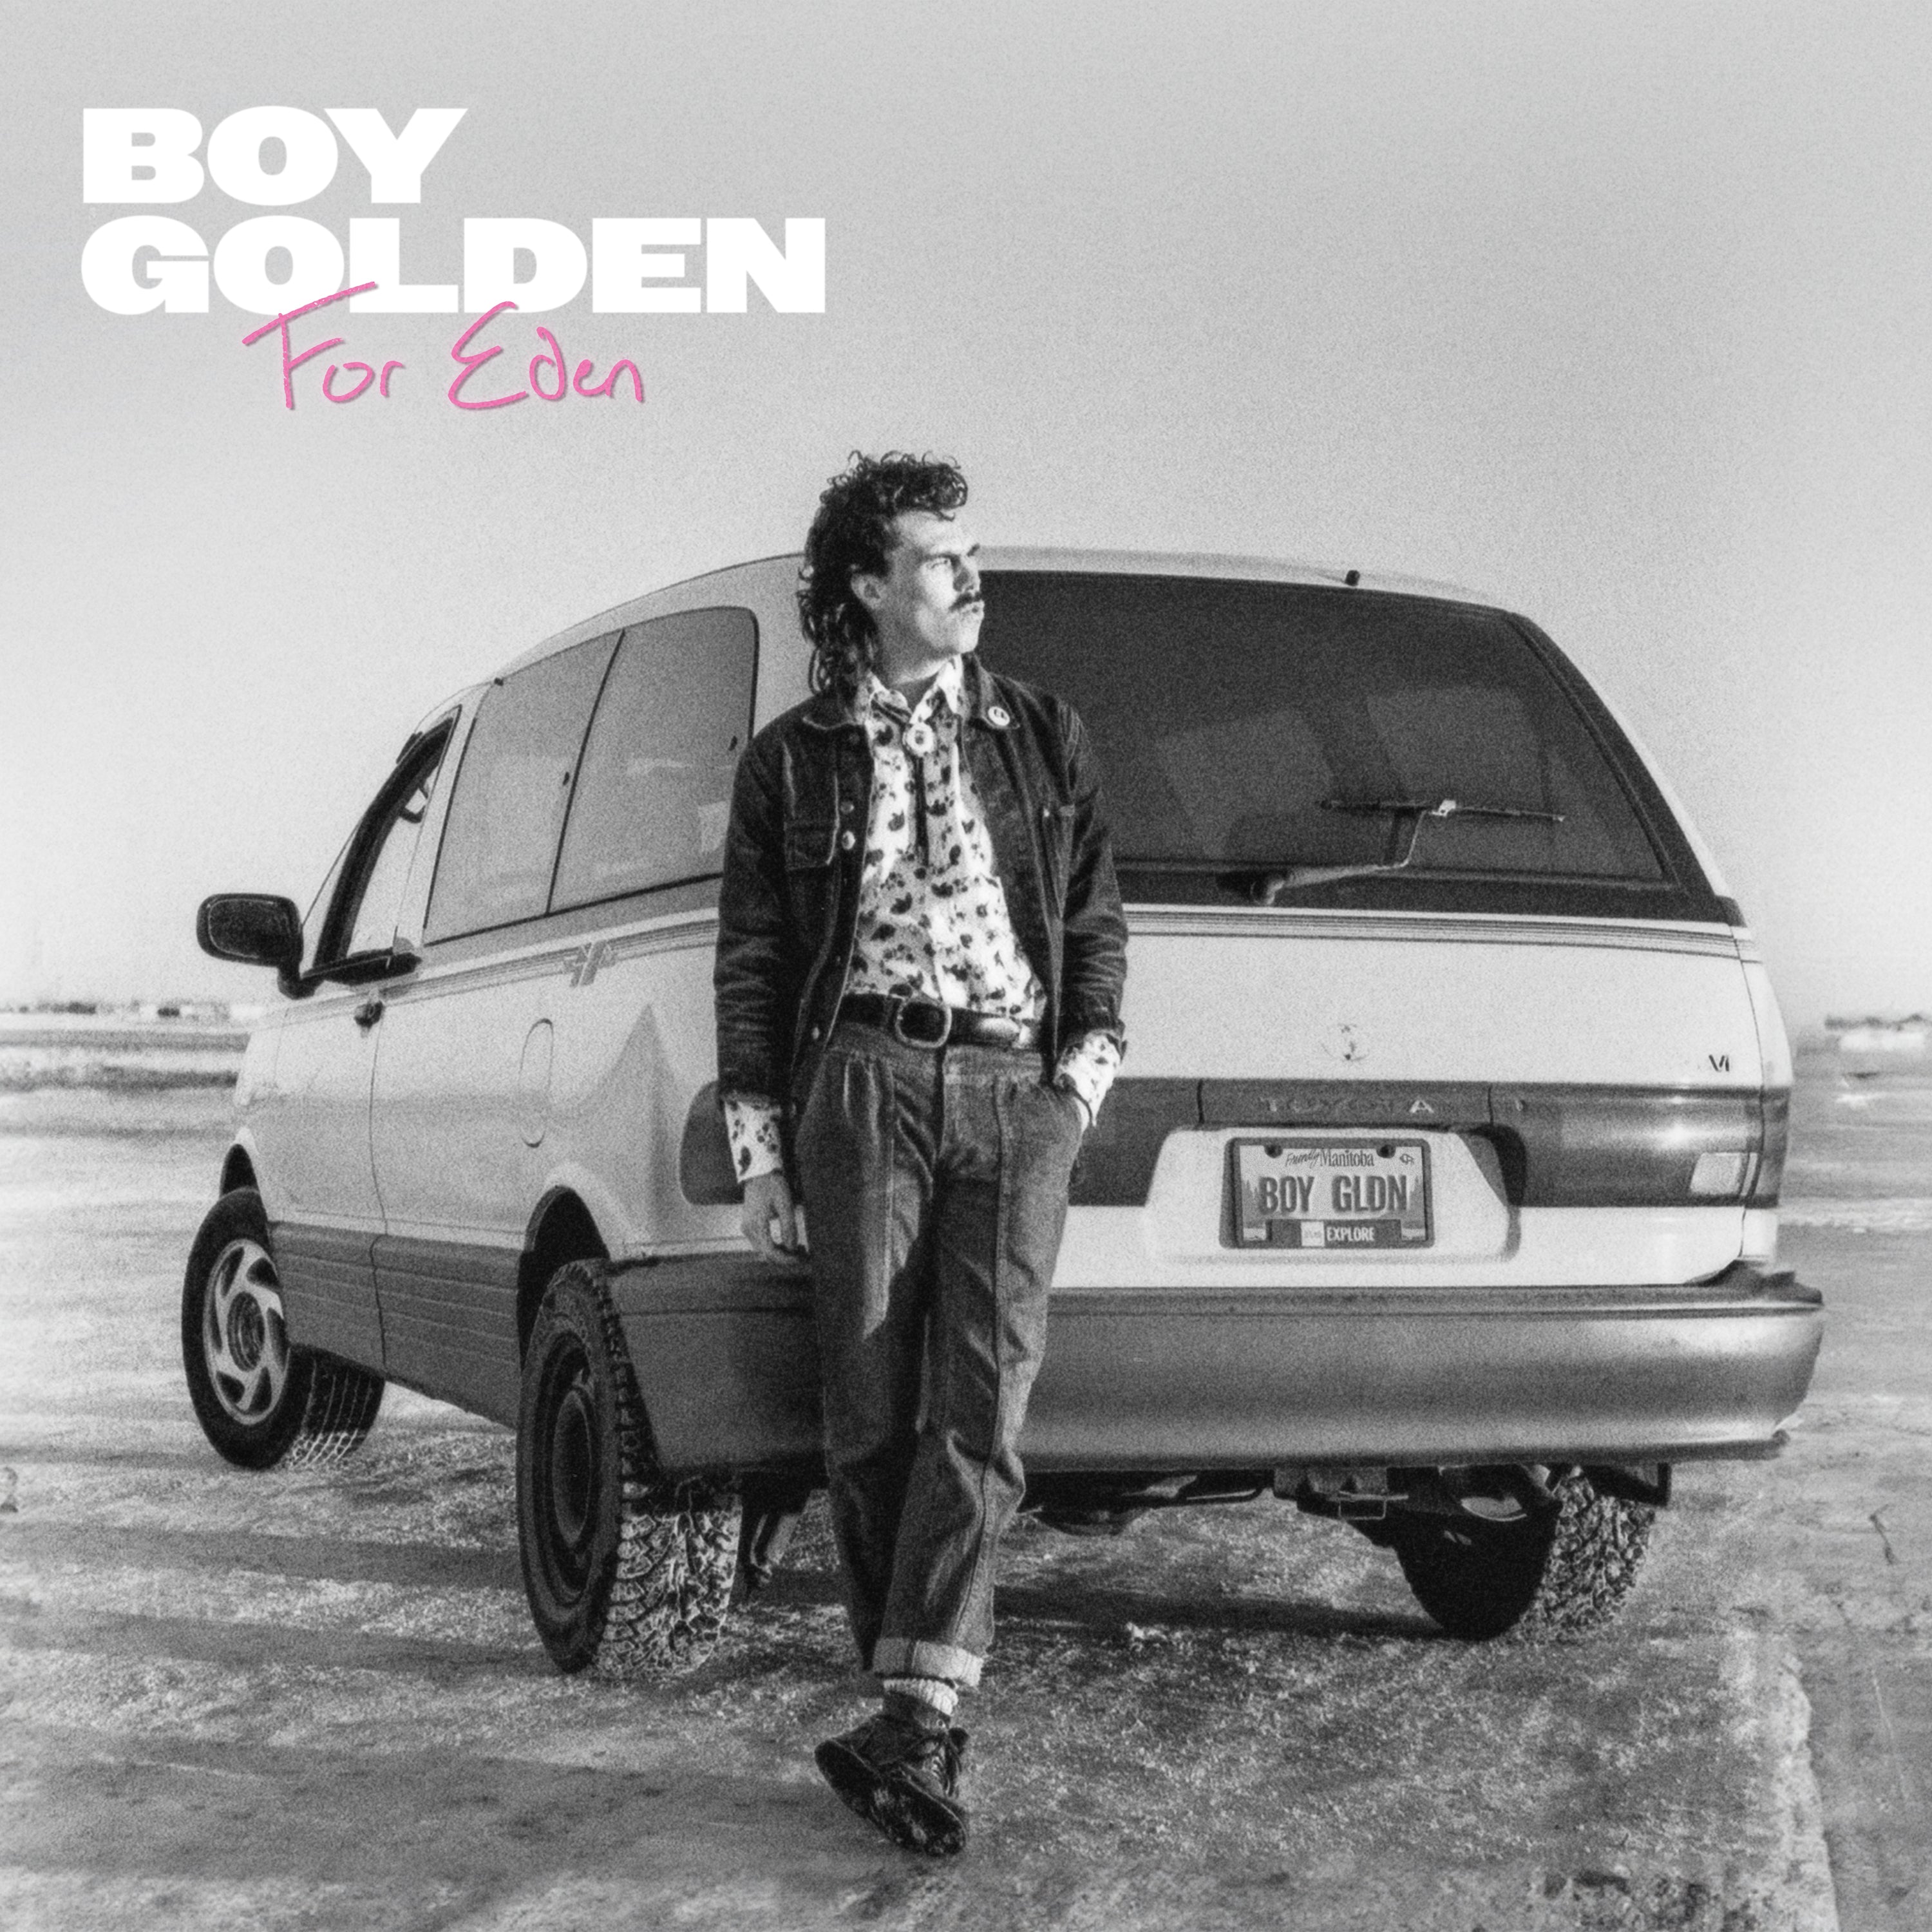 Boy Golden - Burn [Single]